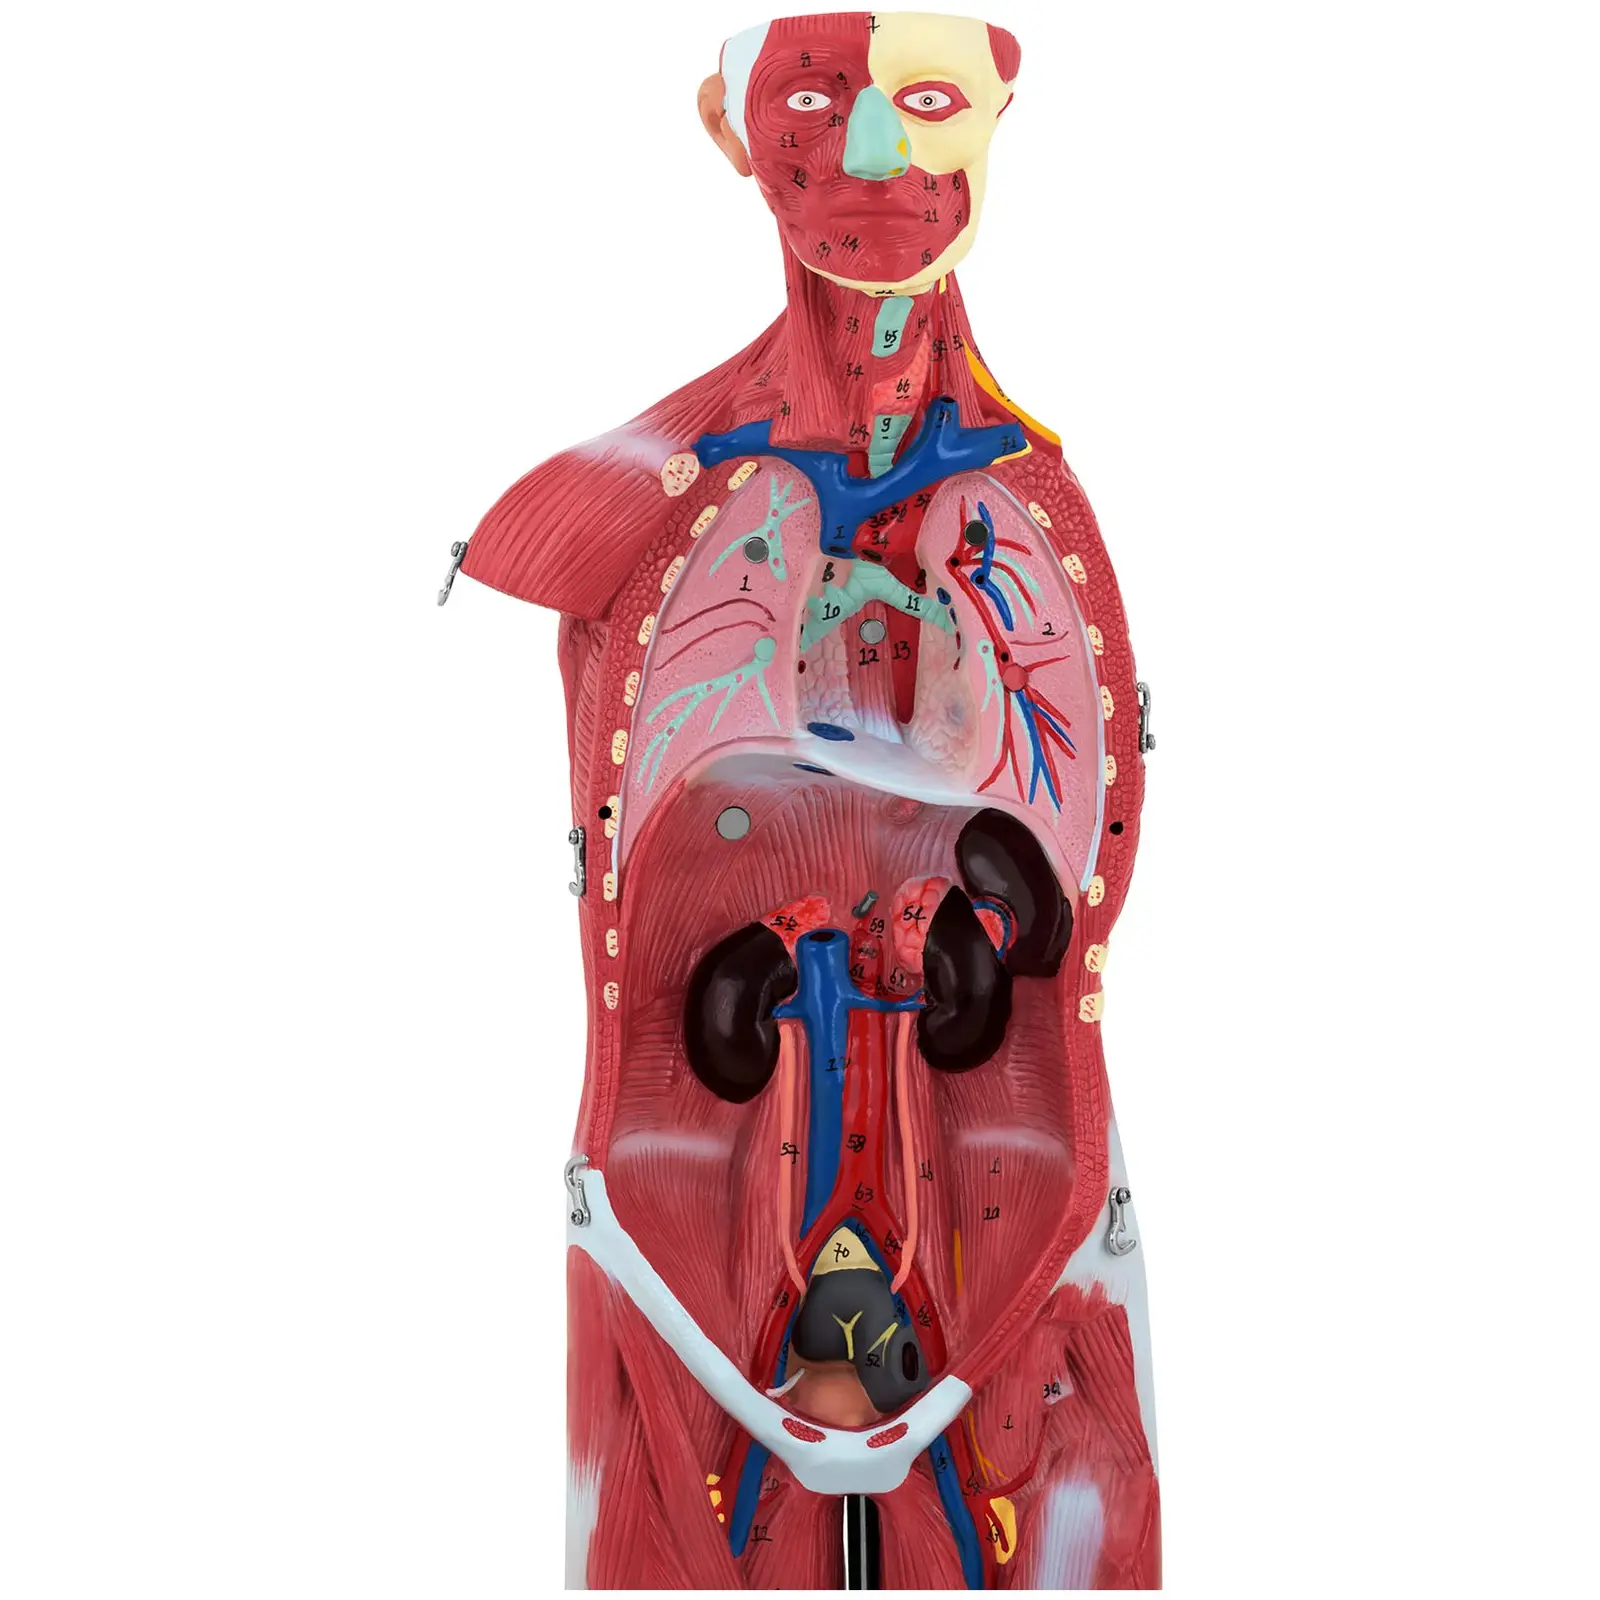 Modello anatomico dei muscoli - Unisex - 27 pezzi - Altezza 76 cm